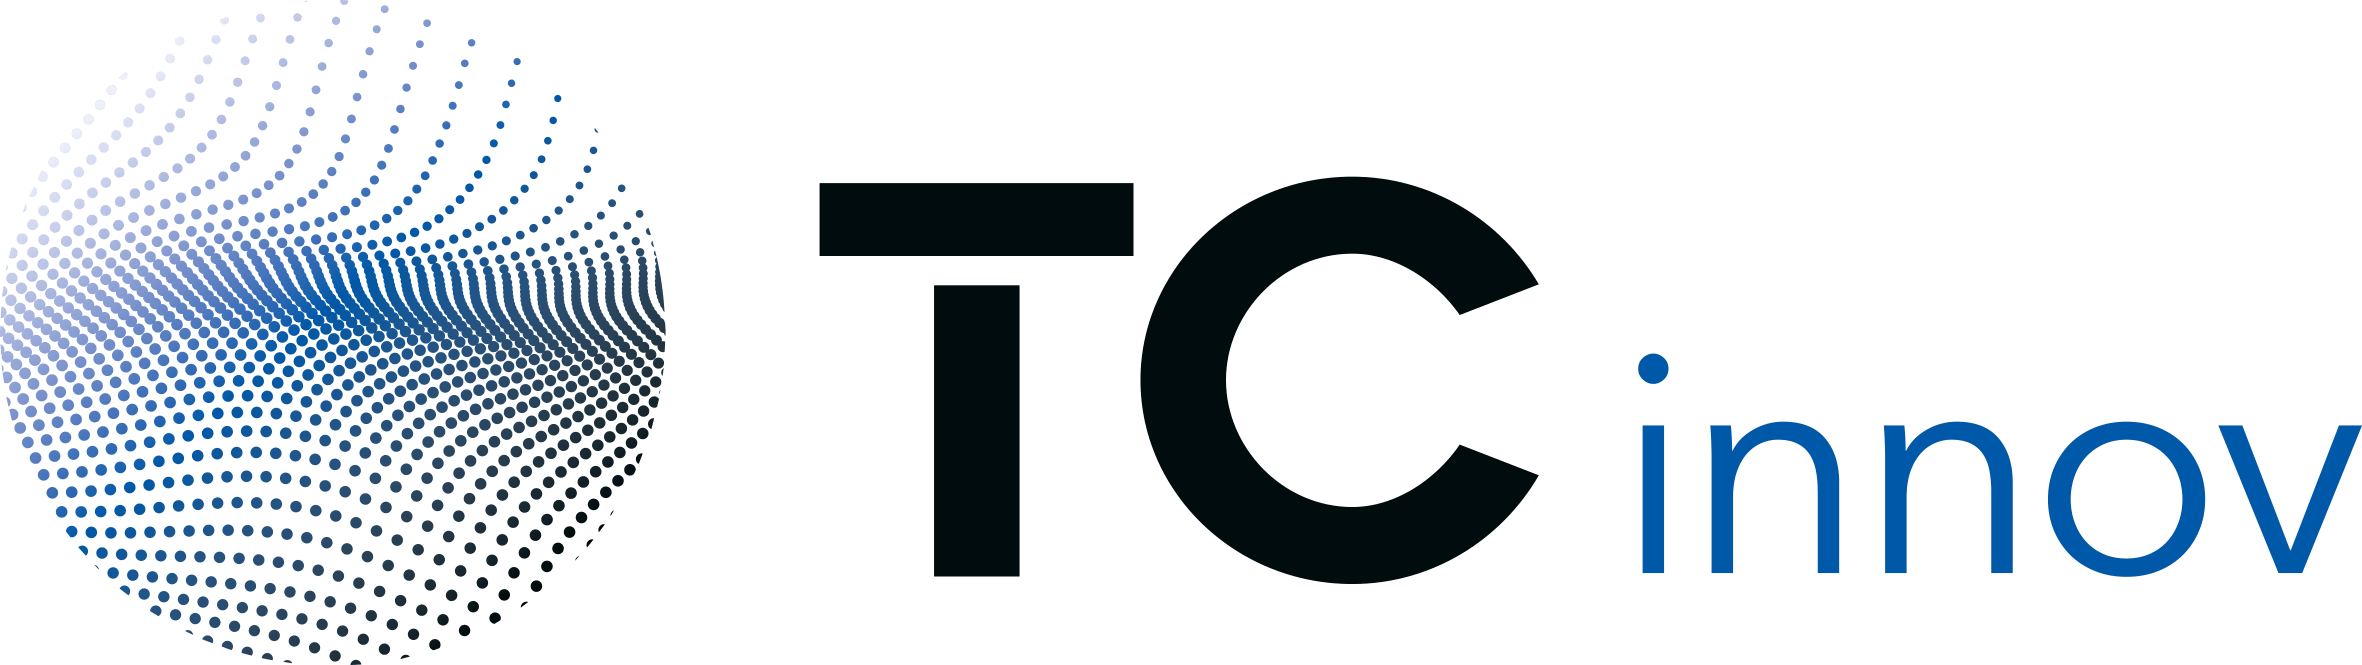 TCinnov_logo_H (1)